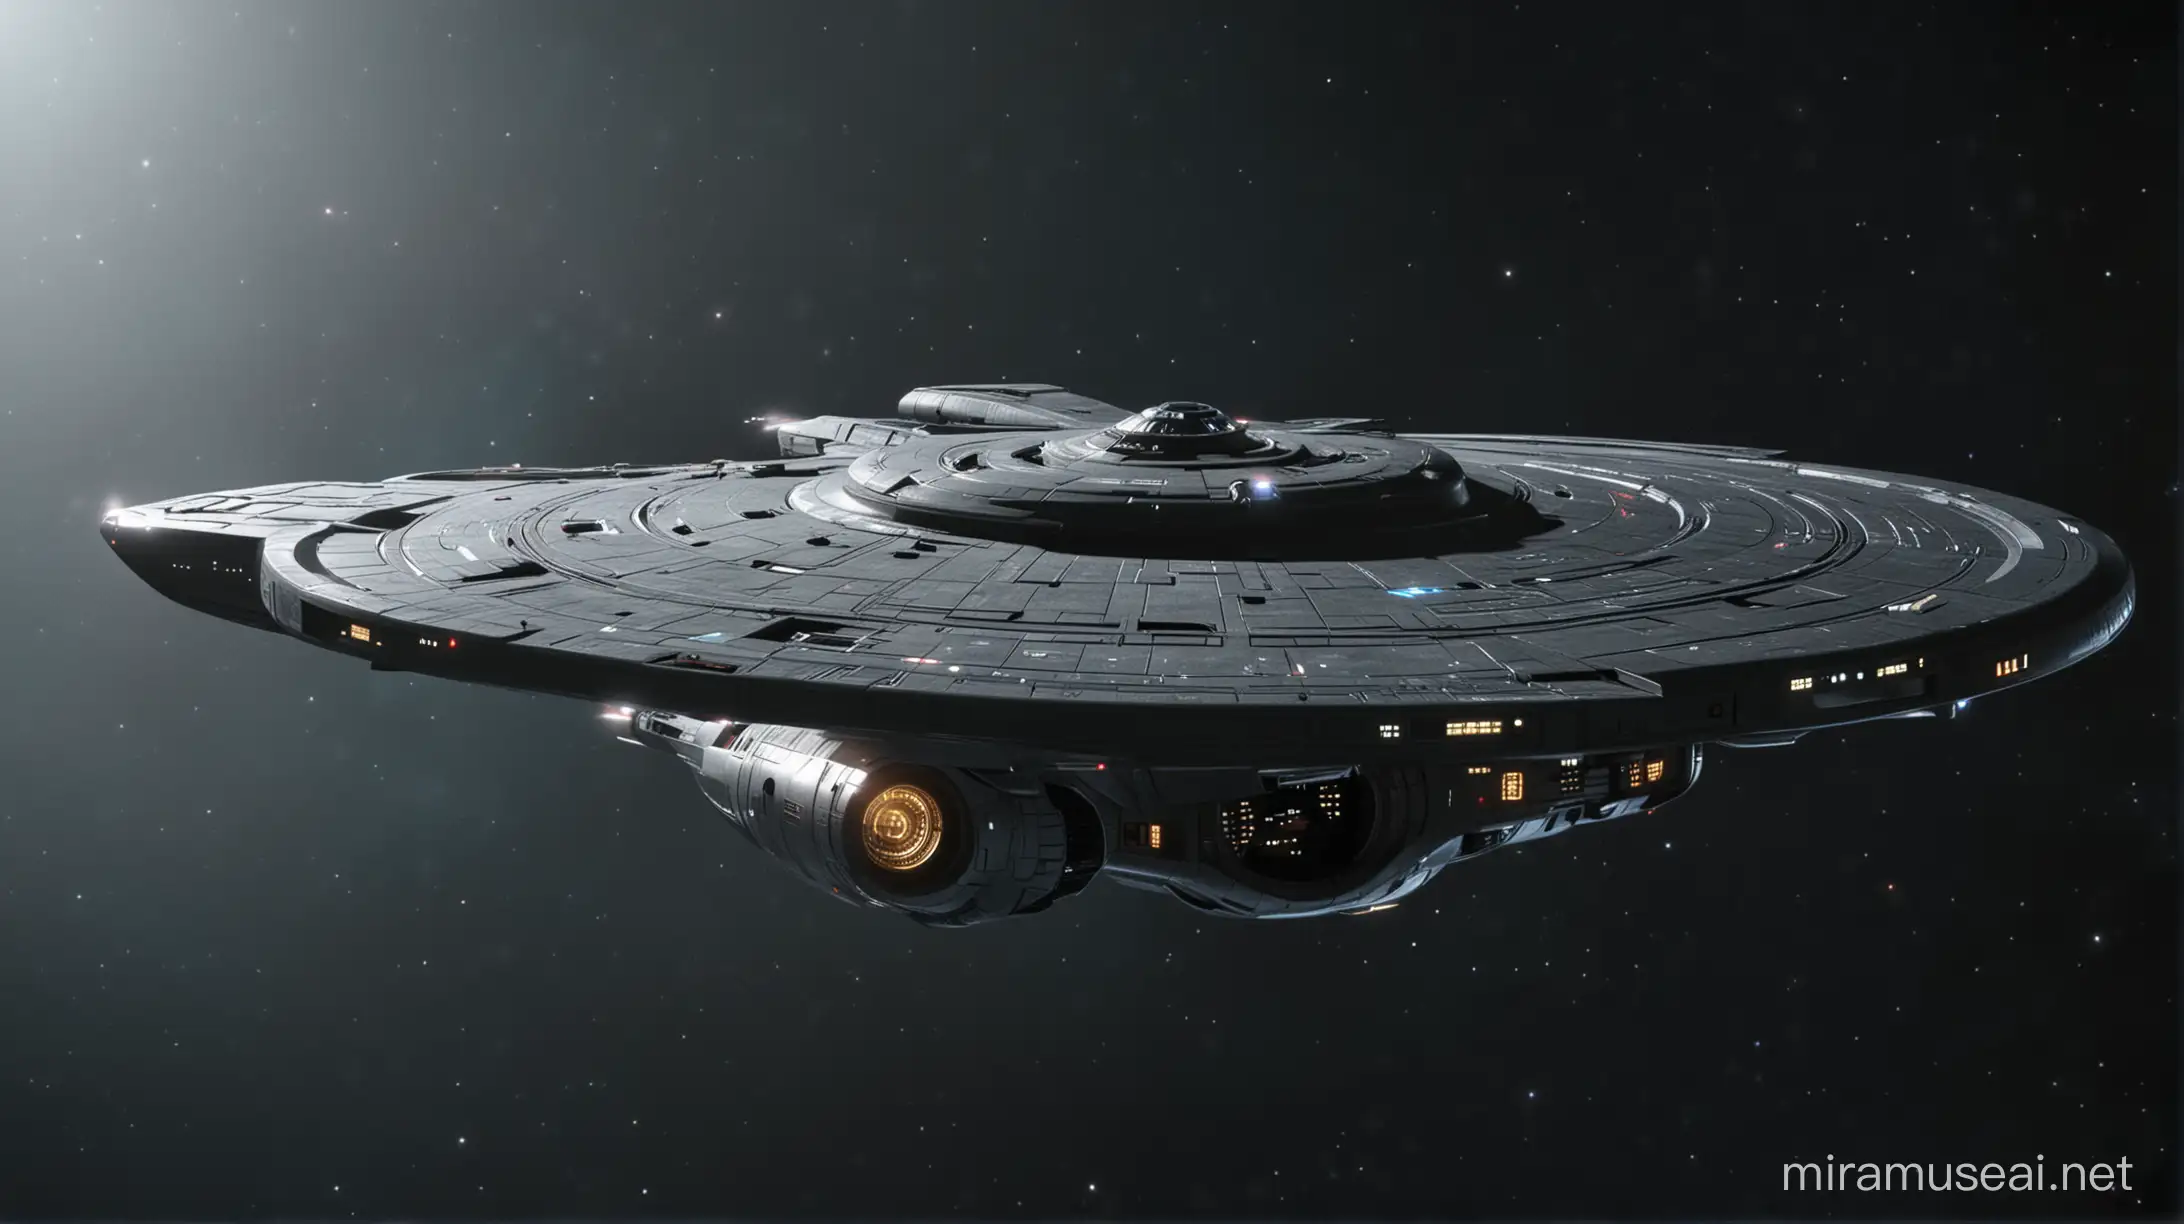 Make a dark background enterprise star trek 
starship like this: https://sm.ign.com/t/ign_hu/blogroll/e/e3-2016-st/e3-2016-star-trek-bridge-crew-teased-ahead-of-monday-reveal_x7yd.1280.jpg